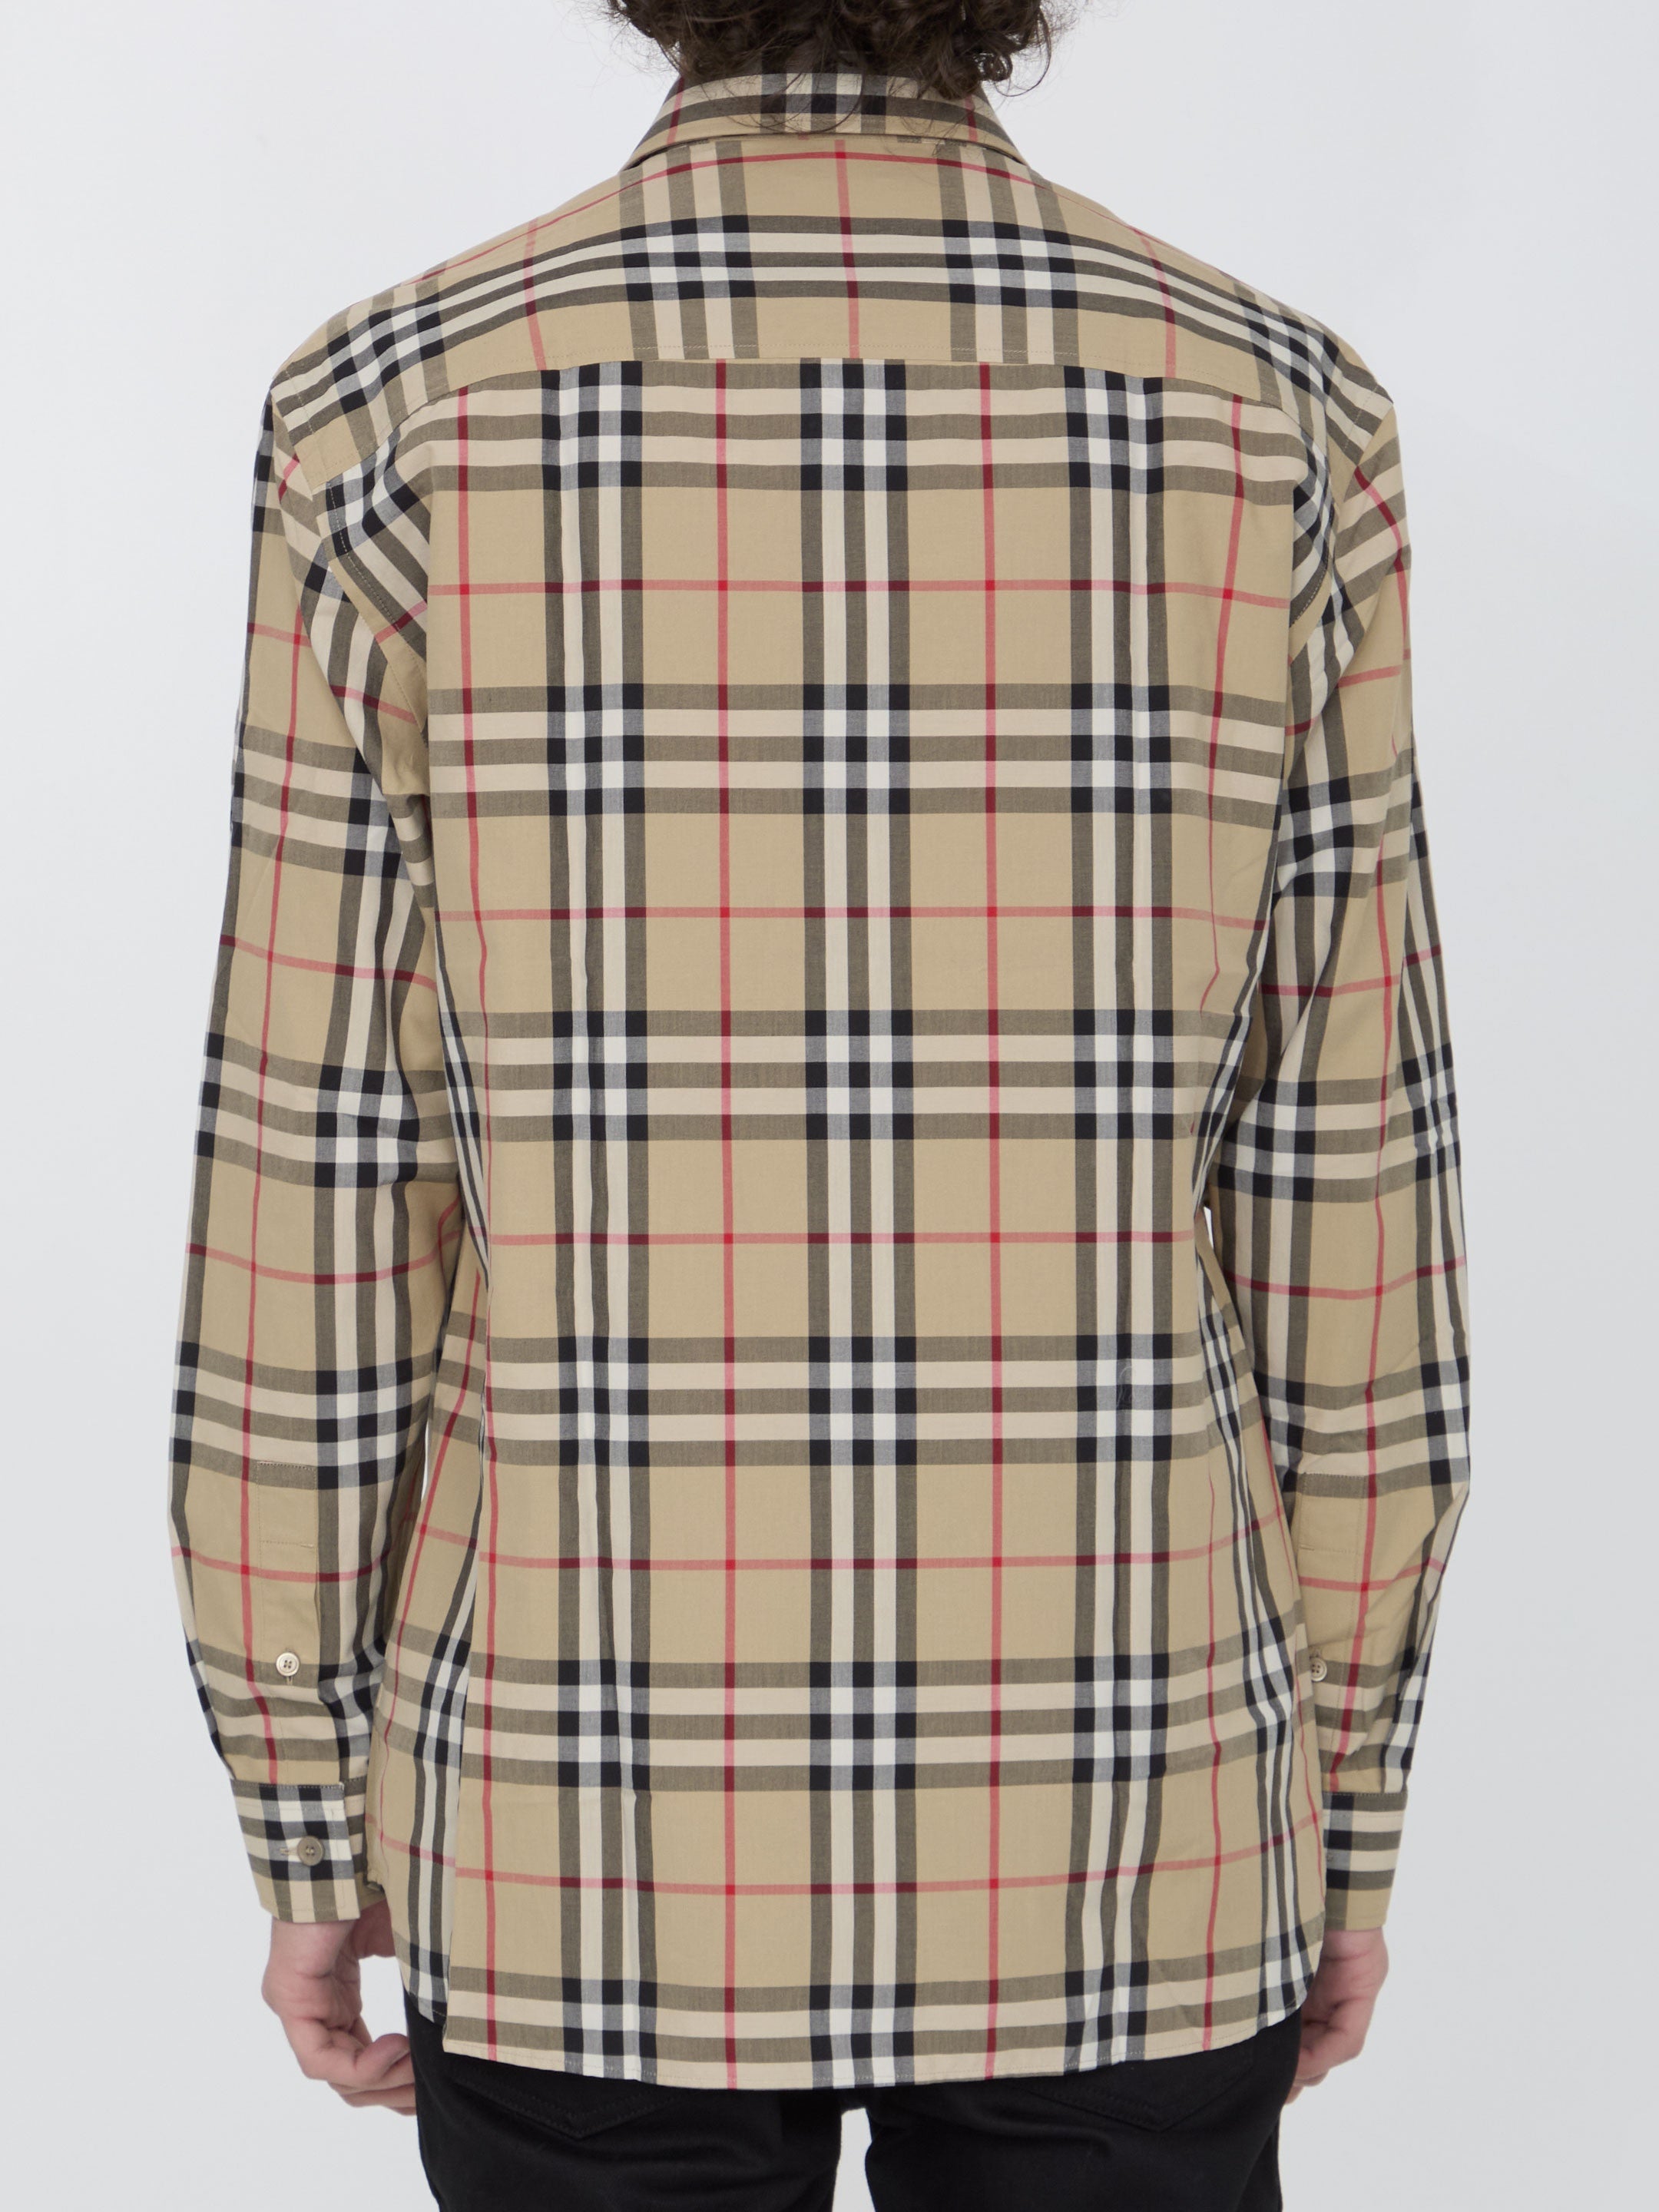 BURBERRY-OUTLET-SALE-Check-cotton-shirt-Shirts-ARCHIVE-COLLECTION-4_3683c43d-e2f0-411e-a88c-809428754327.jpg